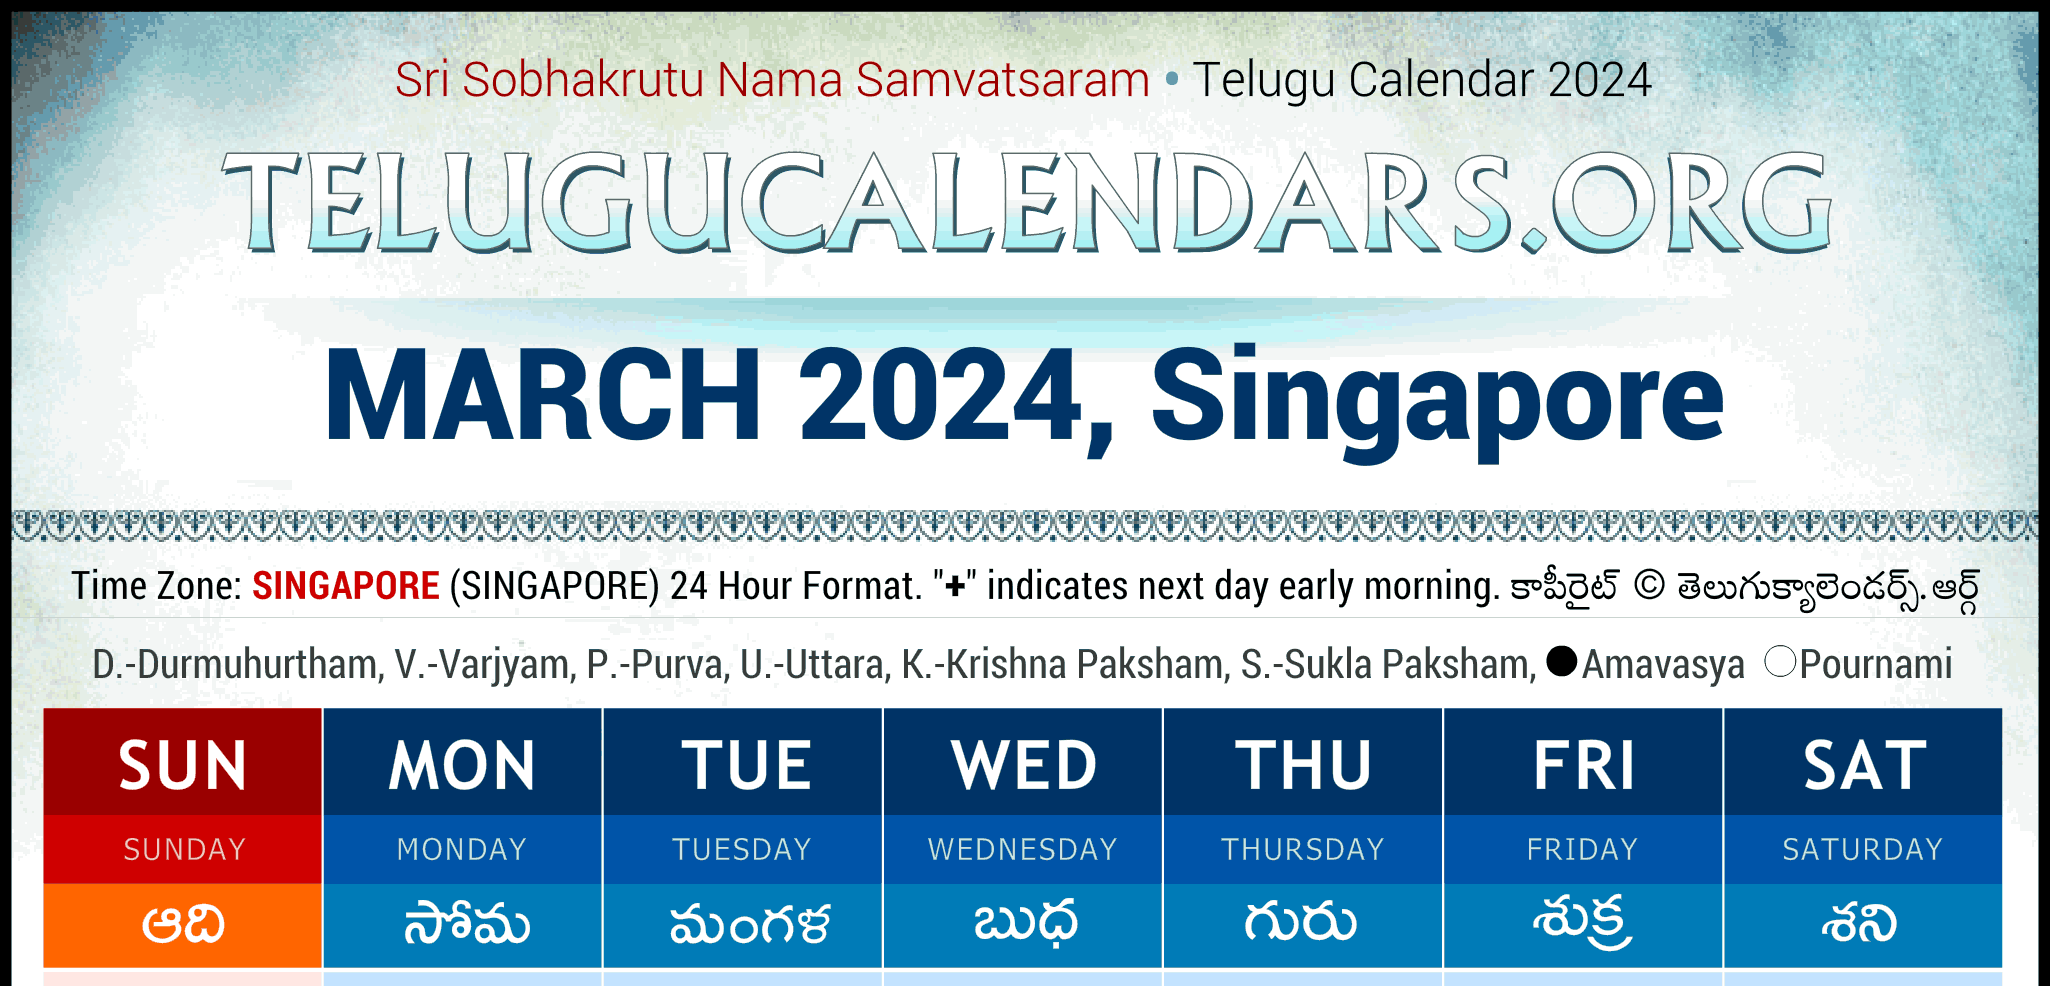 Telugu Calendar 2024 Singapore